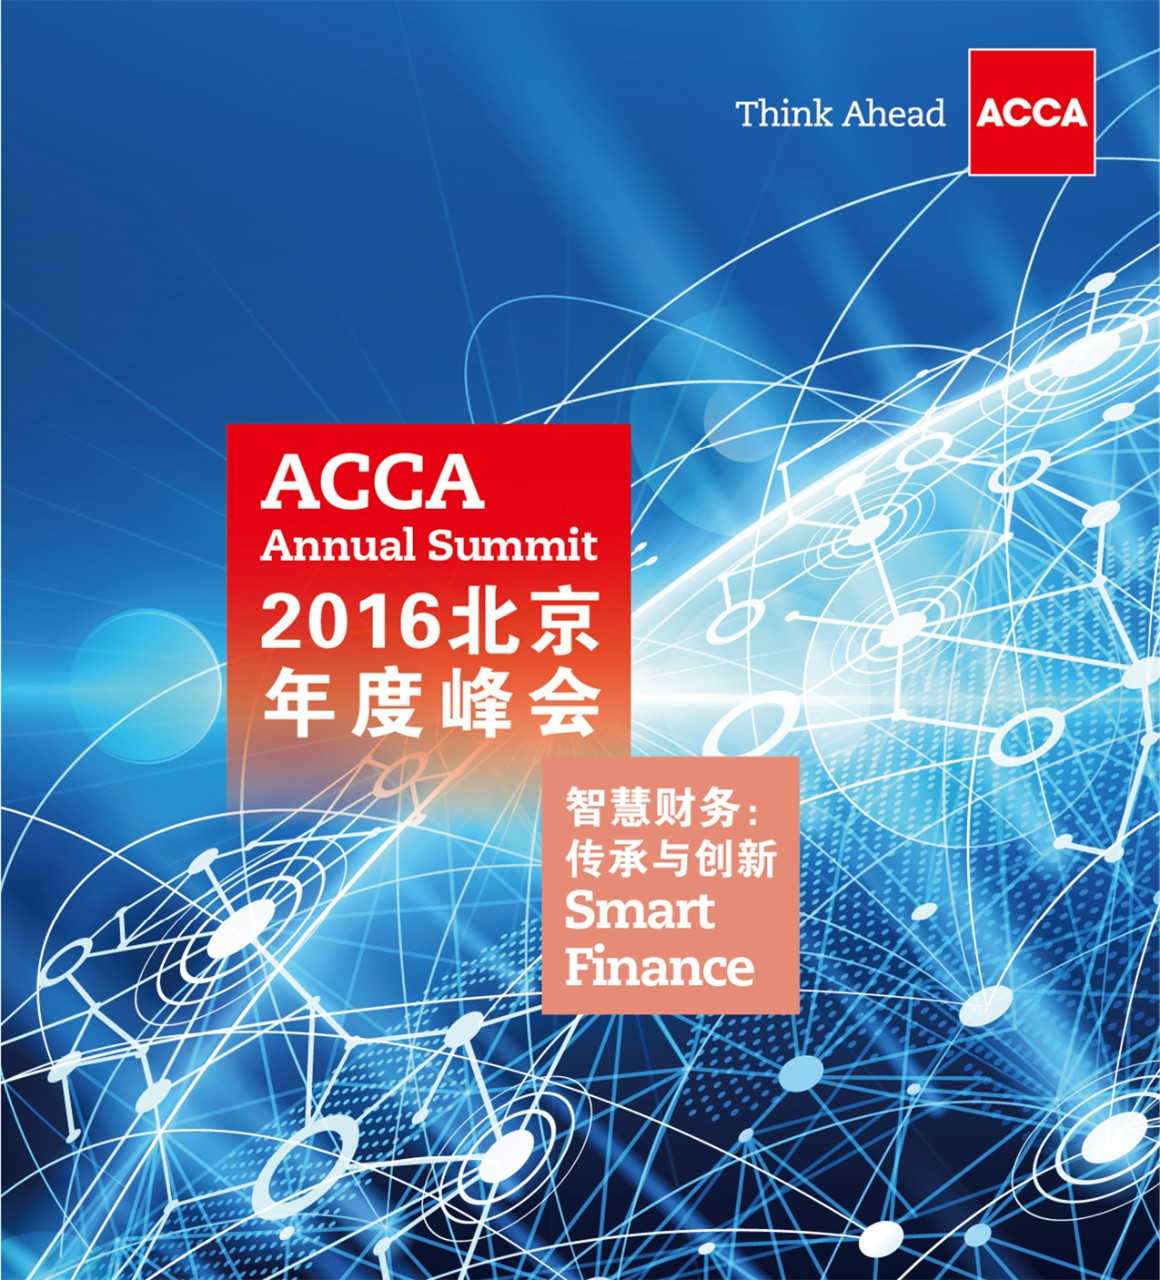  2016年ACCA-BNAI北京年度峰会聚焦财务传承与创新